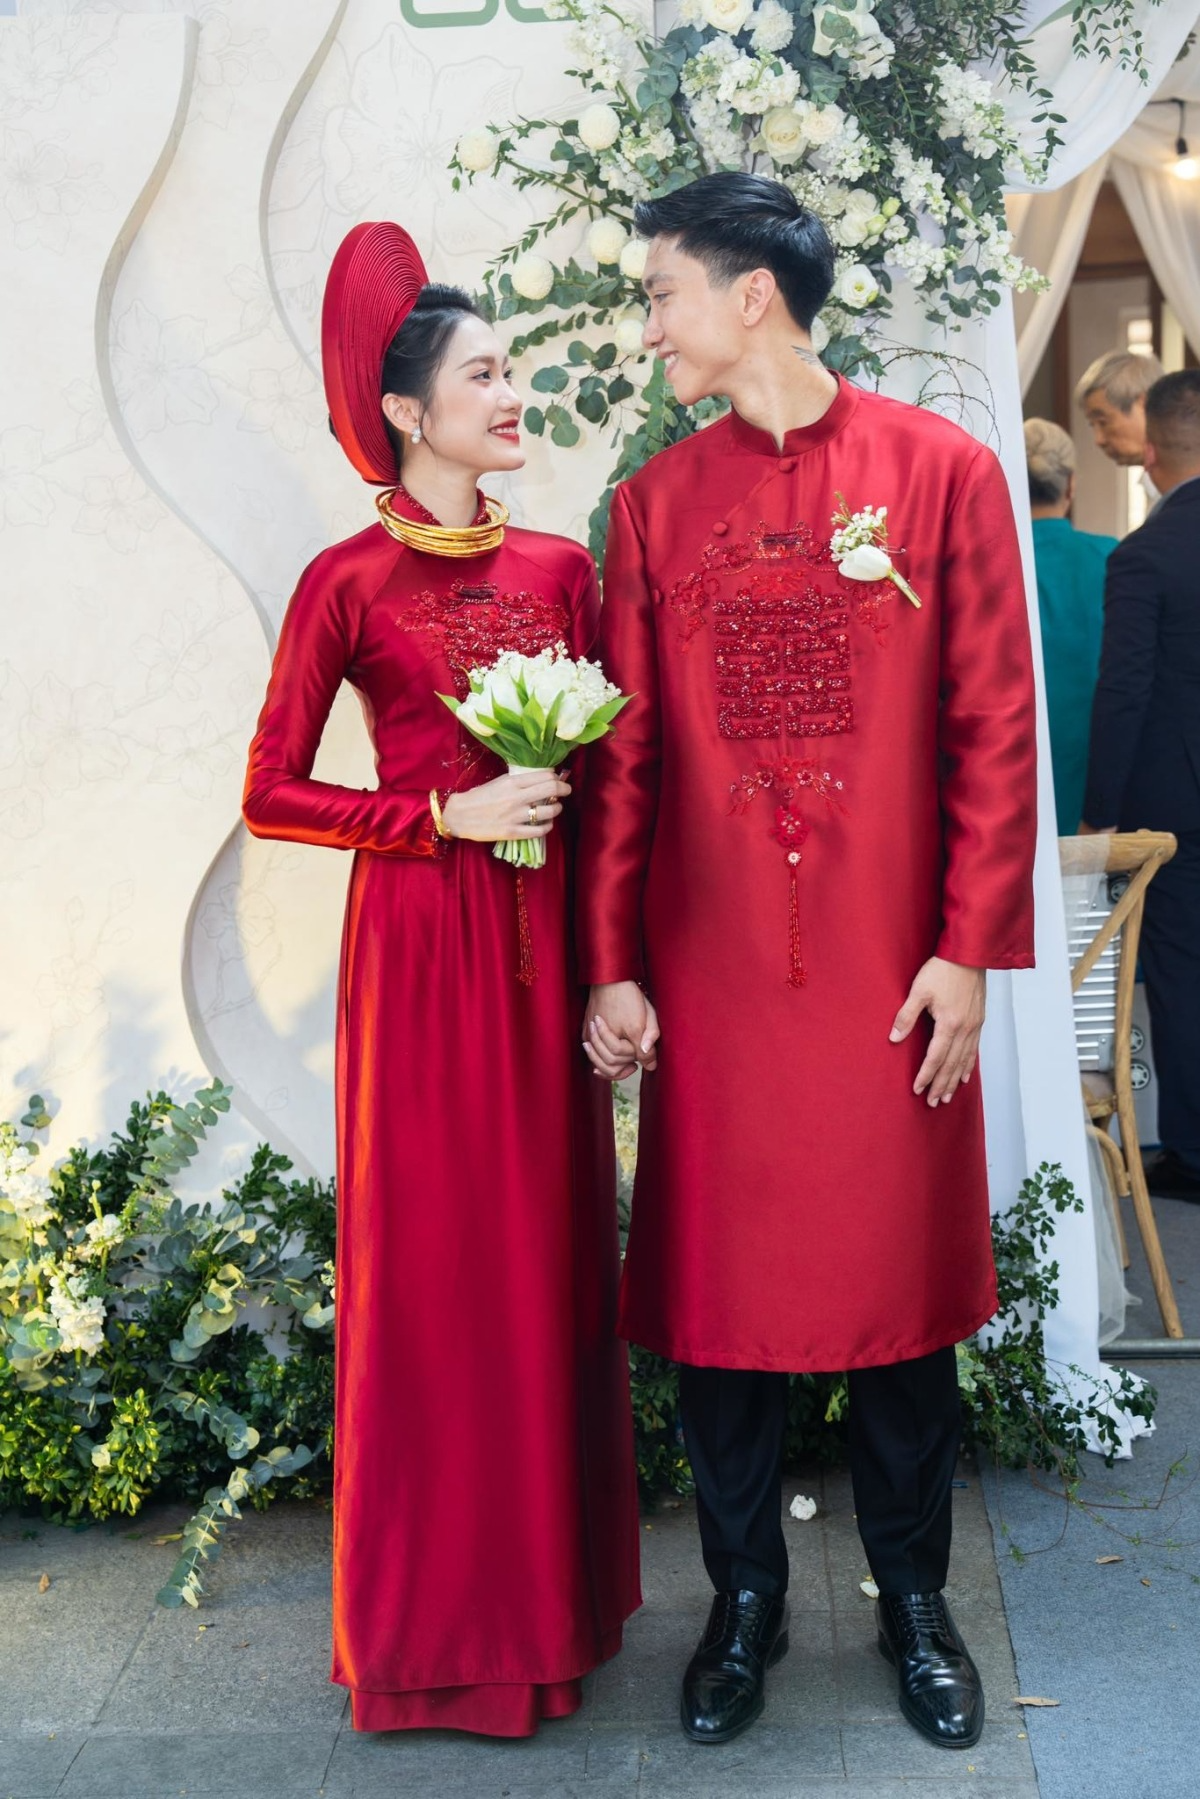 Bóc giá' ba chiếc áo dài cưới chục triệu của mẹ vợ Đoàn Văn Hậu